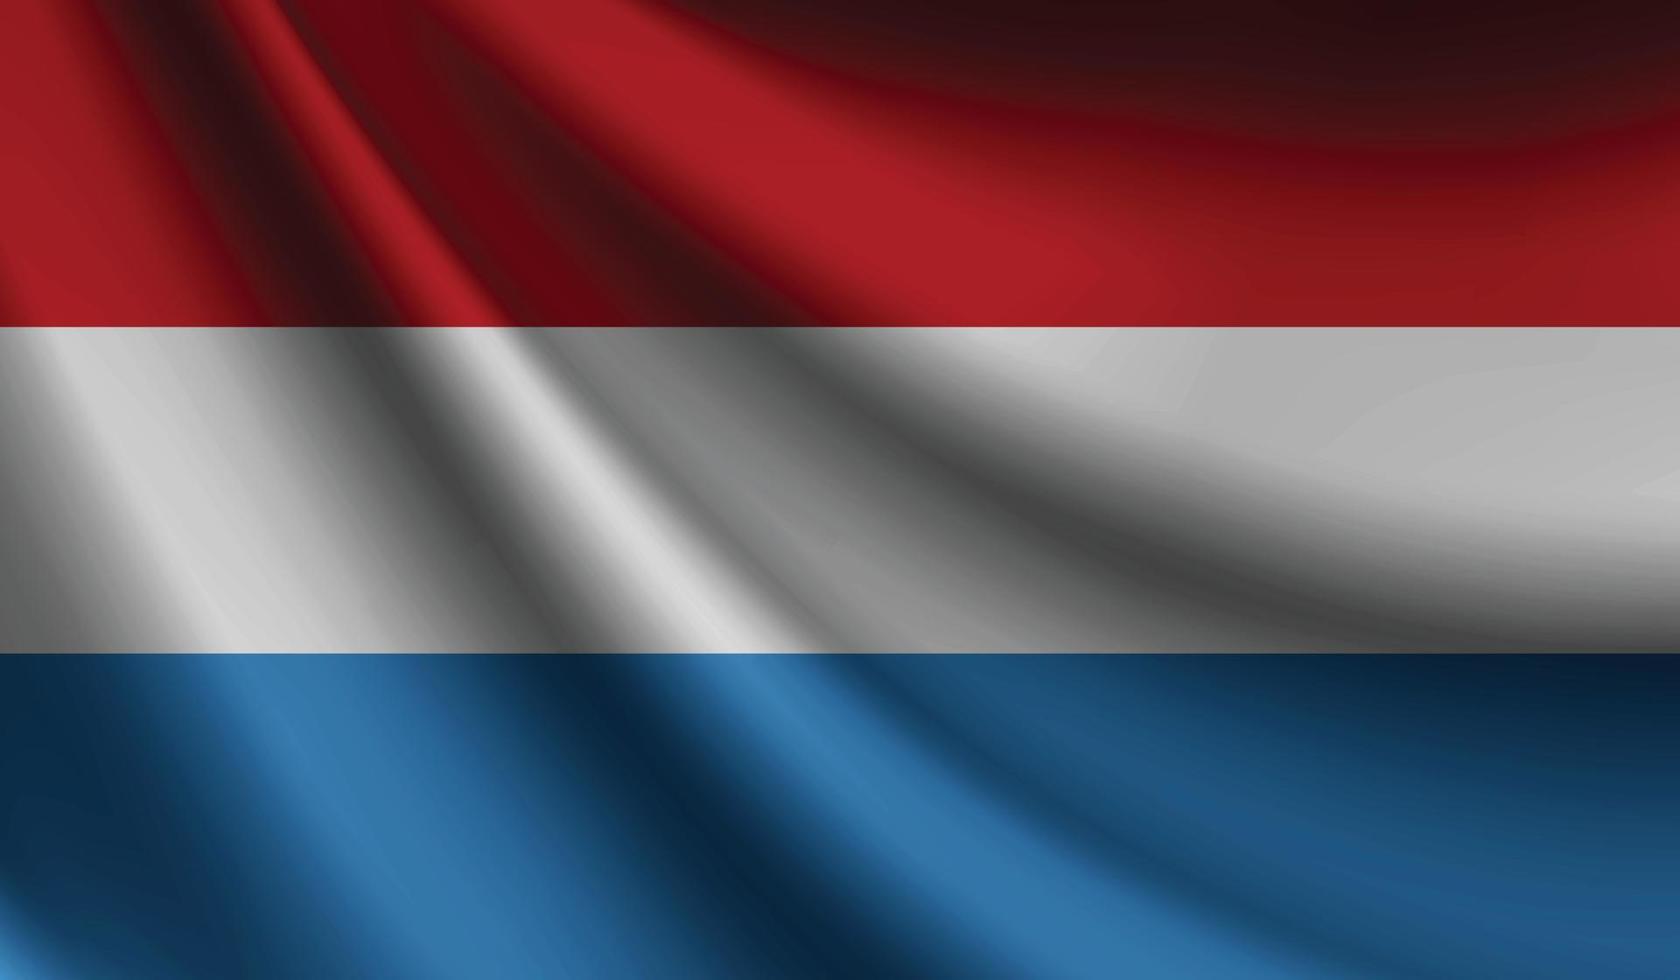 luxemburg flagga vinka bakgrund för patriotisk och nationell design vektor